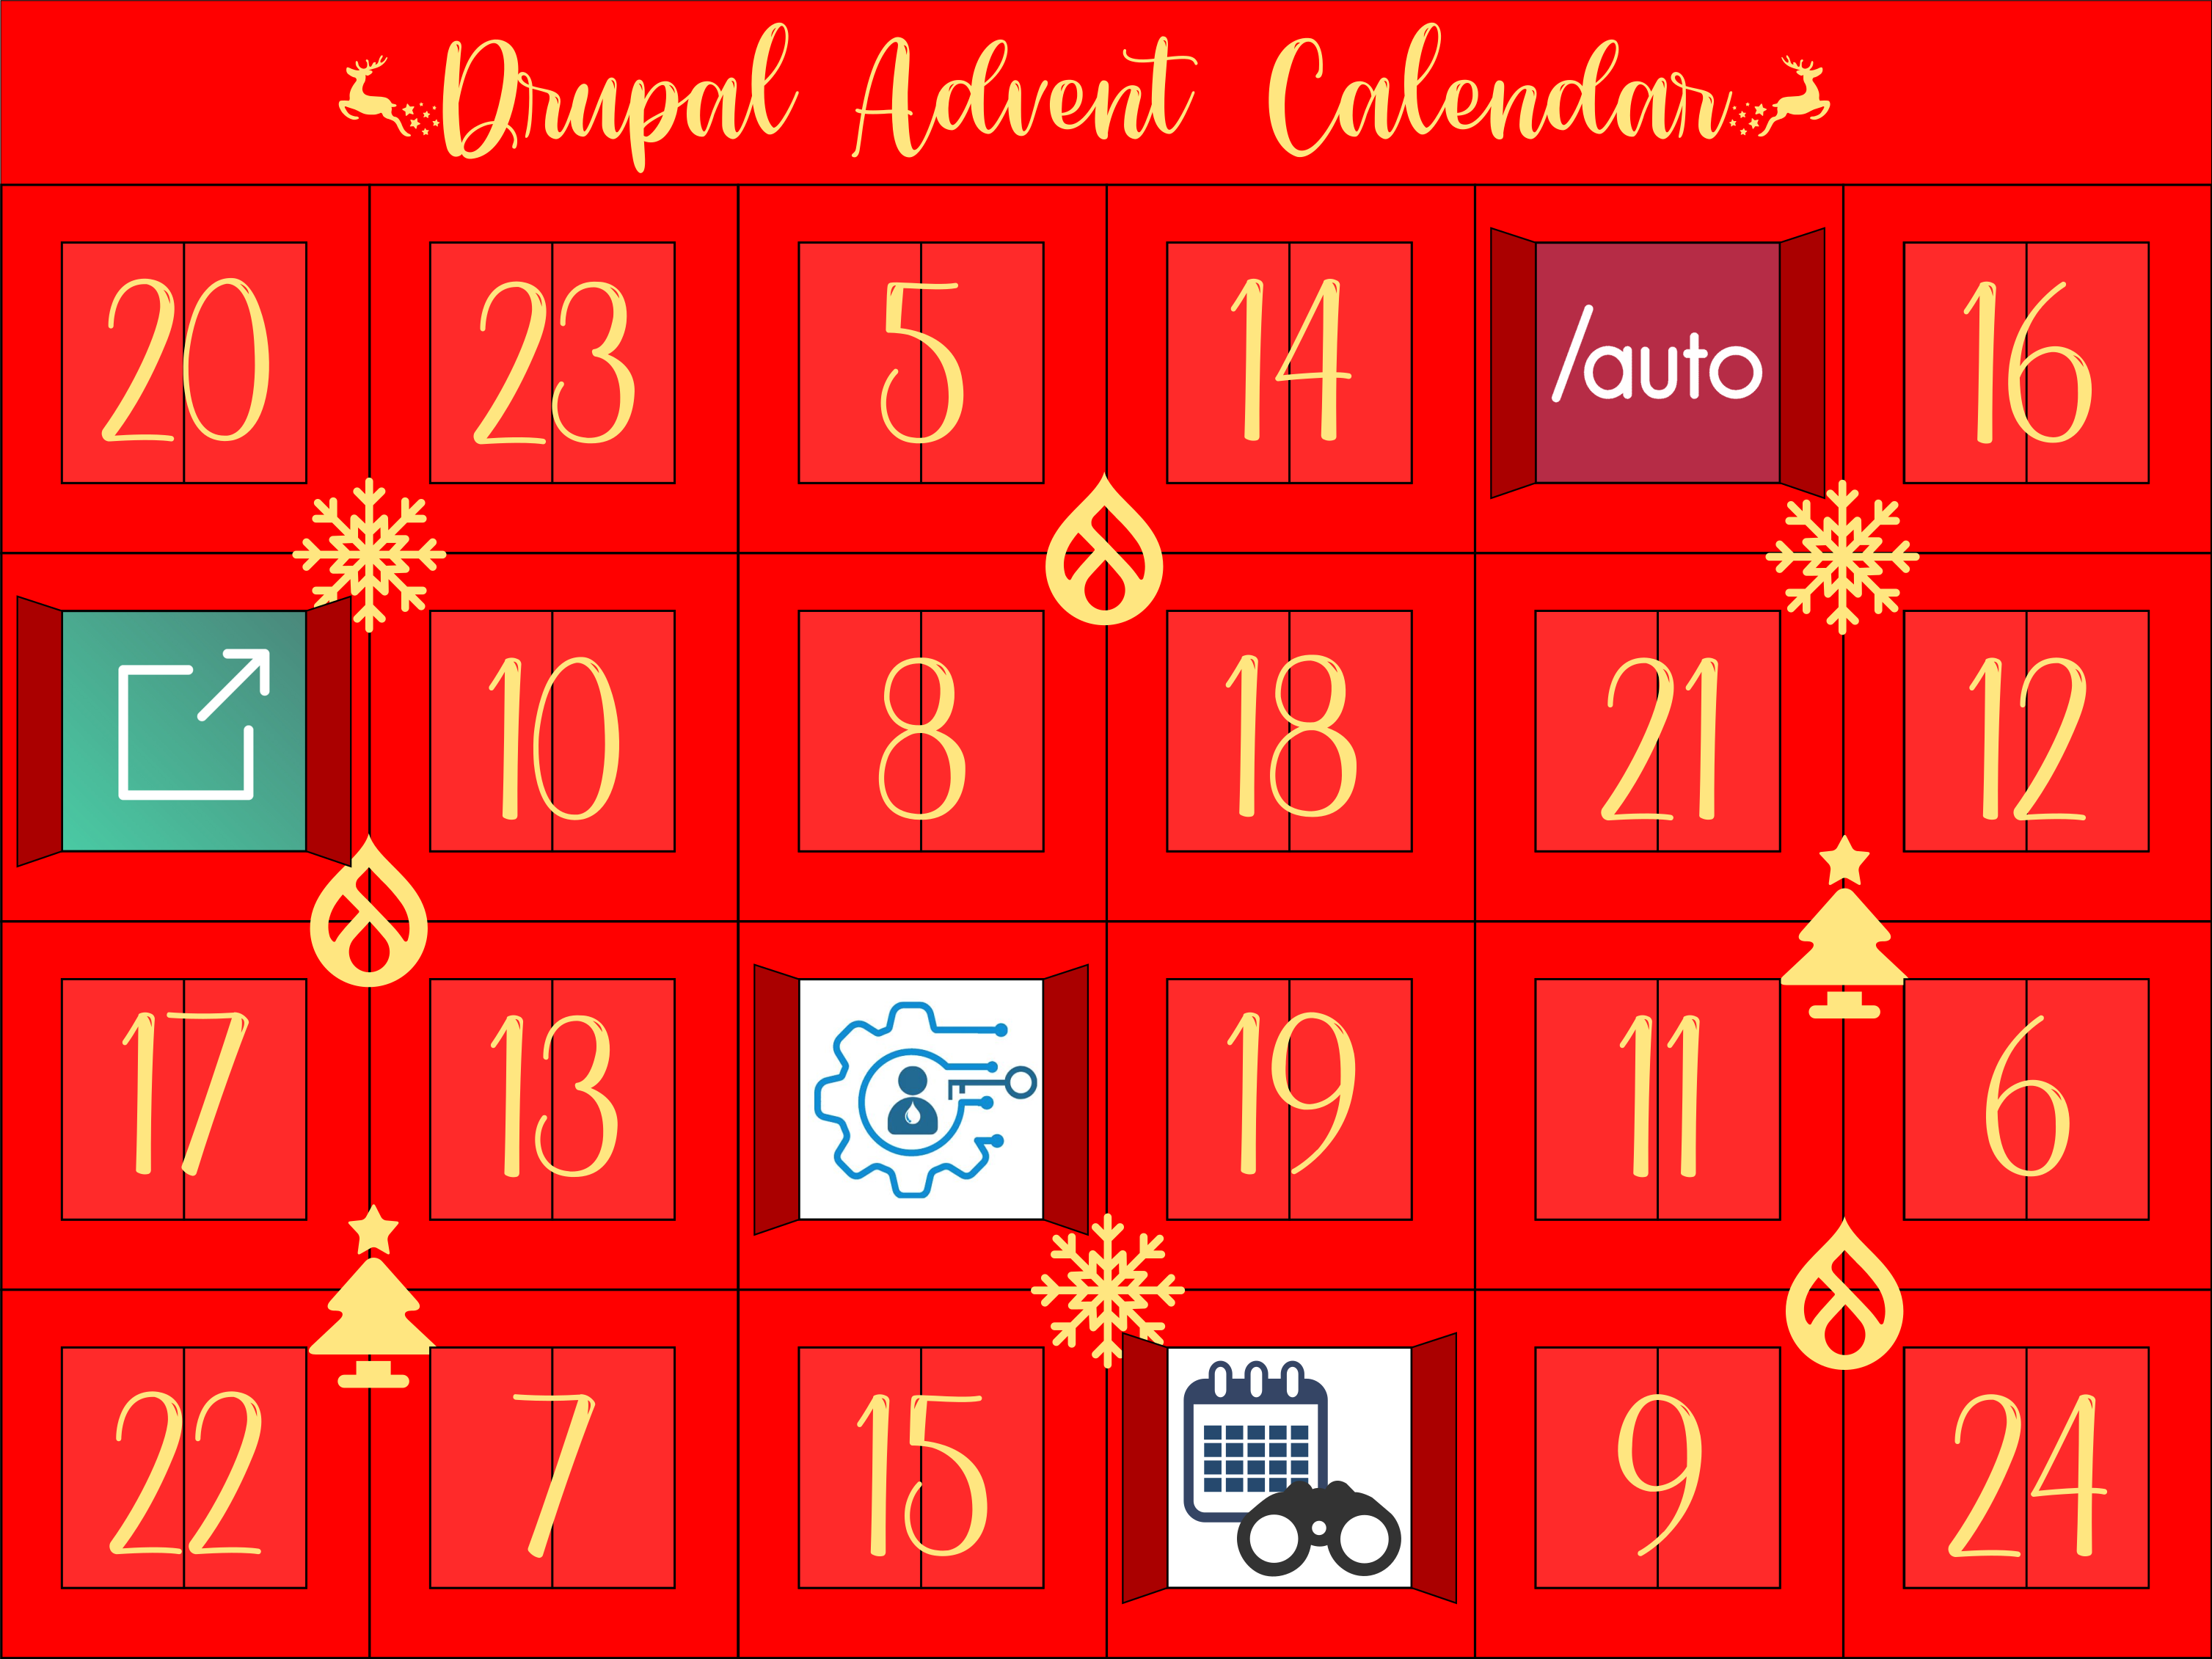 Advent Calendar with door 4 open showing External Links logo.